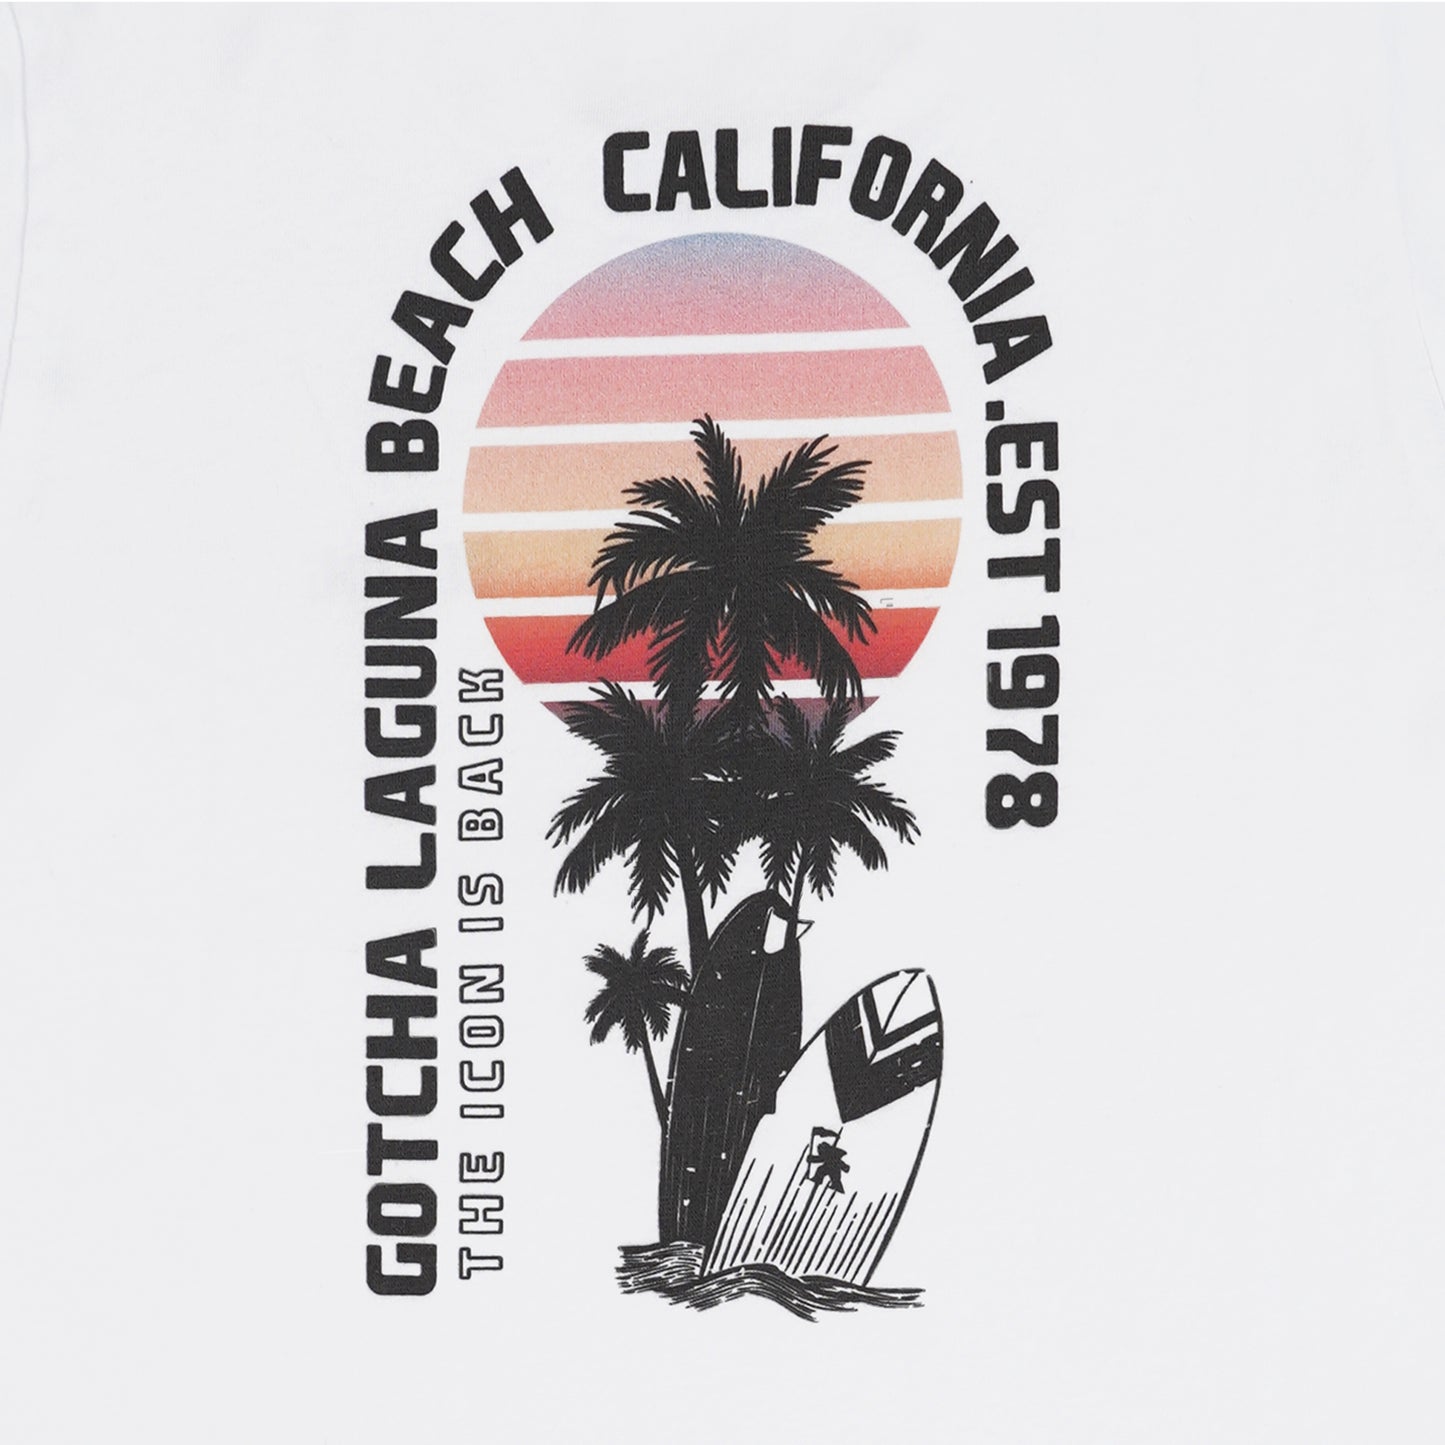 Cali T-shirt